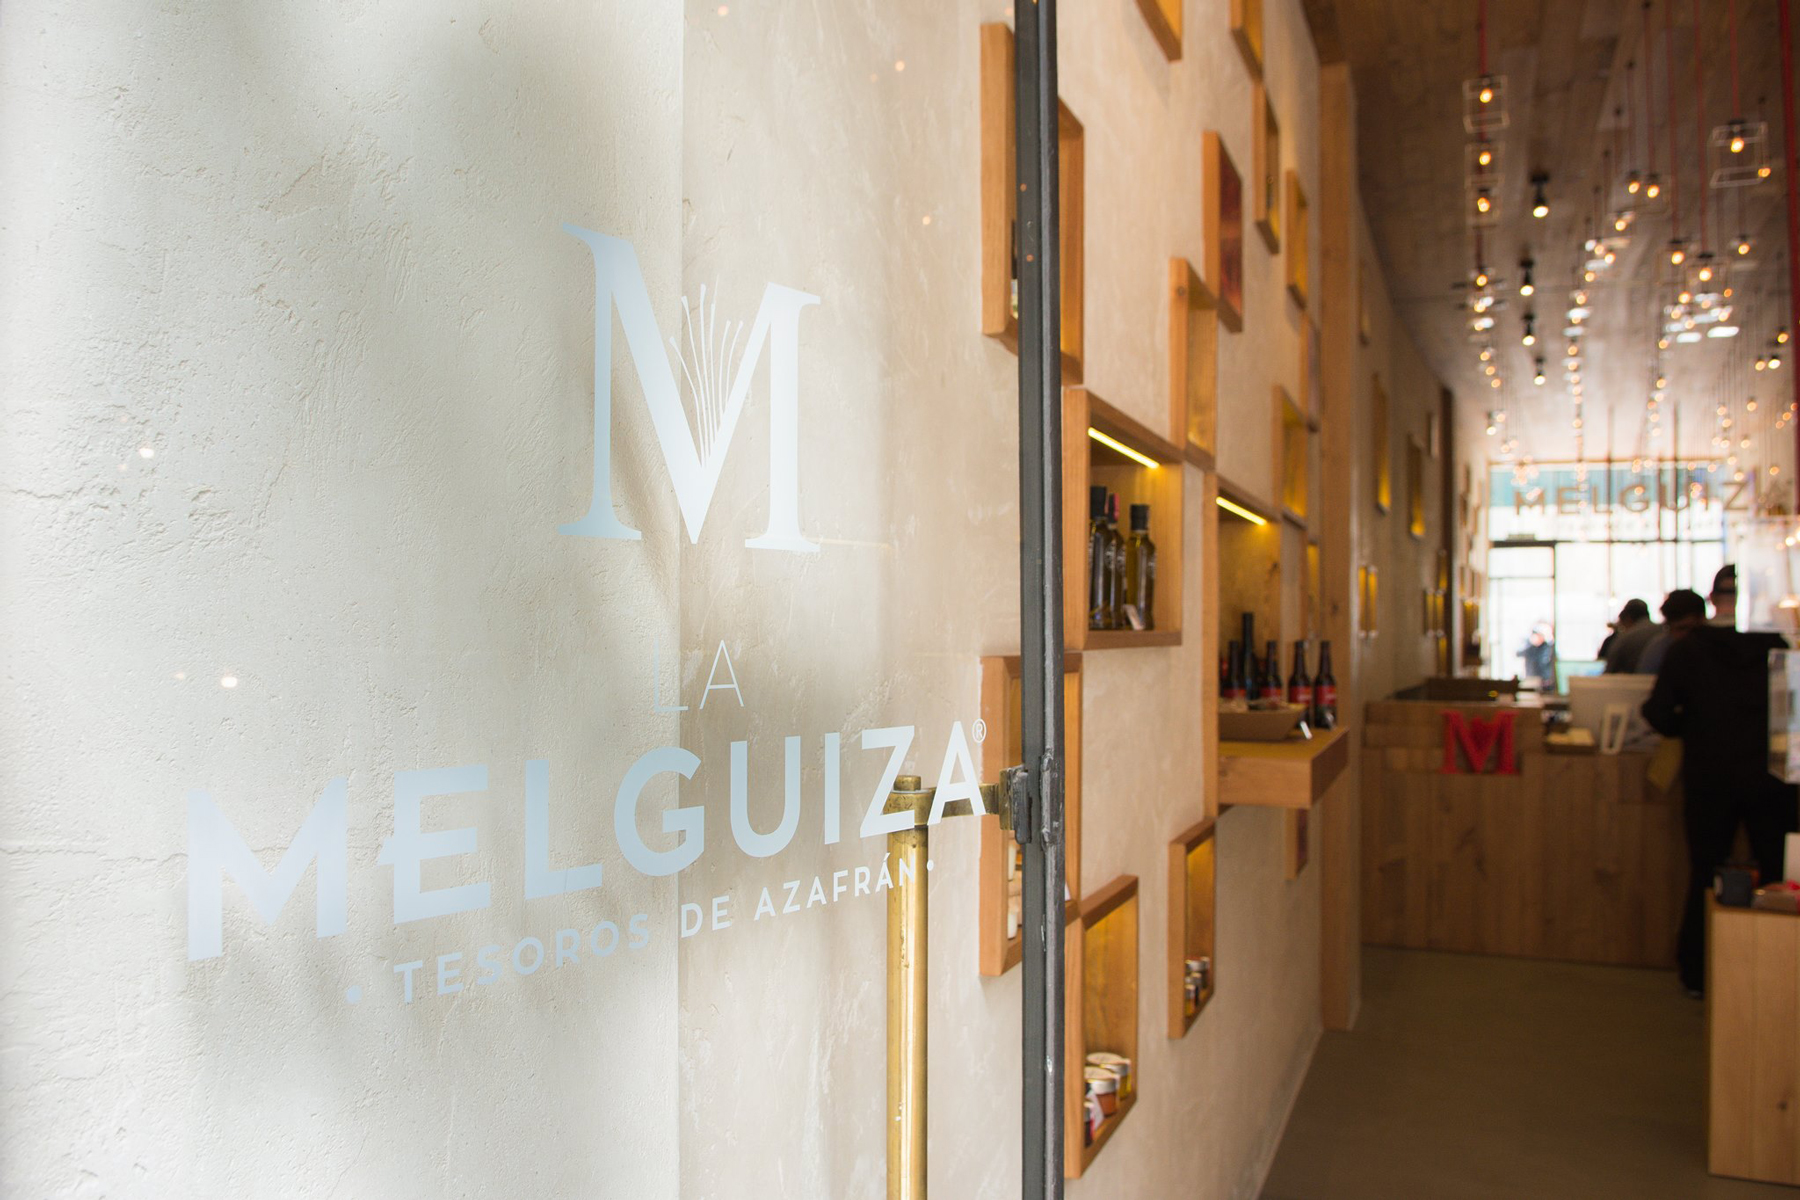 La melguiza by Mutta Estudio - Creative Work - $i